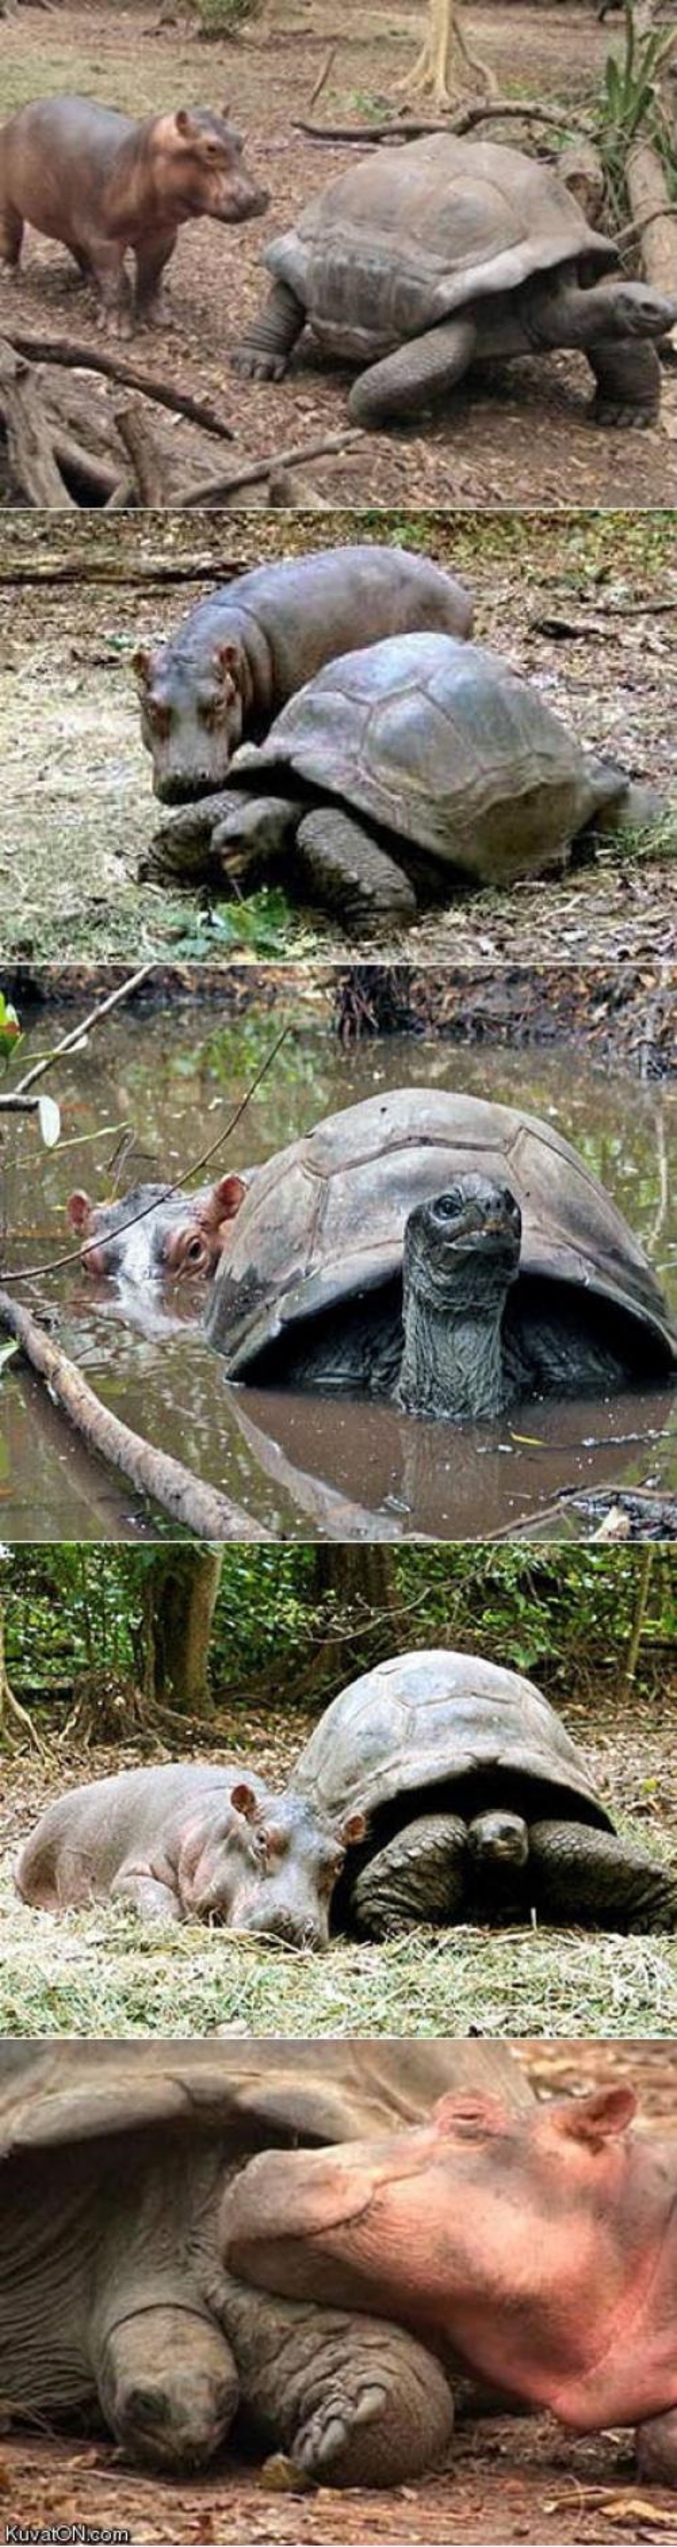 Le "petit" hippopotame de 300 kg, surnommé Owen par l'équipe du Lafarge Park, avait été emporté par la forte vague qui s'était engouffrée dans la rivière Sabaki, avant de refluer vers l'océan Indien. Il avait ensuite été sauvé par des gardes forestiers.

"C'est incroyable: le petit hippopotame, qui n'a pas un an, a été adopté par une tortue mâle, qui a 100 ans. Et la tortue semble très contente de jouer les mères, a raconté à l'AFP la responsable du parc, Paula Kahumbu.

"Après avoir perdu sa mère, l'hippopotame était traumatisé. Il a cherché une nouvelle mère. Heureusement, il a trouvé la tortue et s'est lié très fortement à elle: ils nagent, mangent et dorment ensemble", a ajouté cette protectrice de l'environnement.